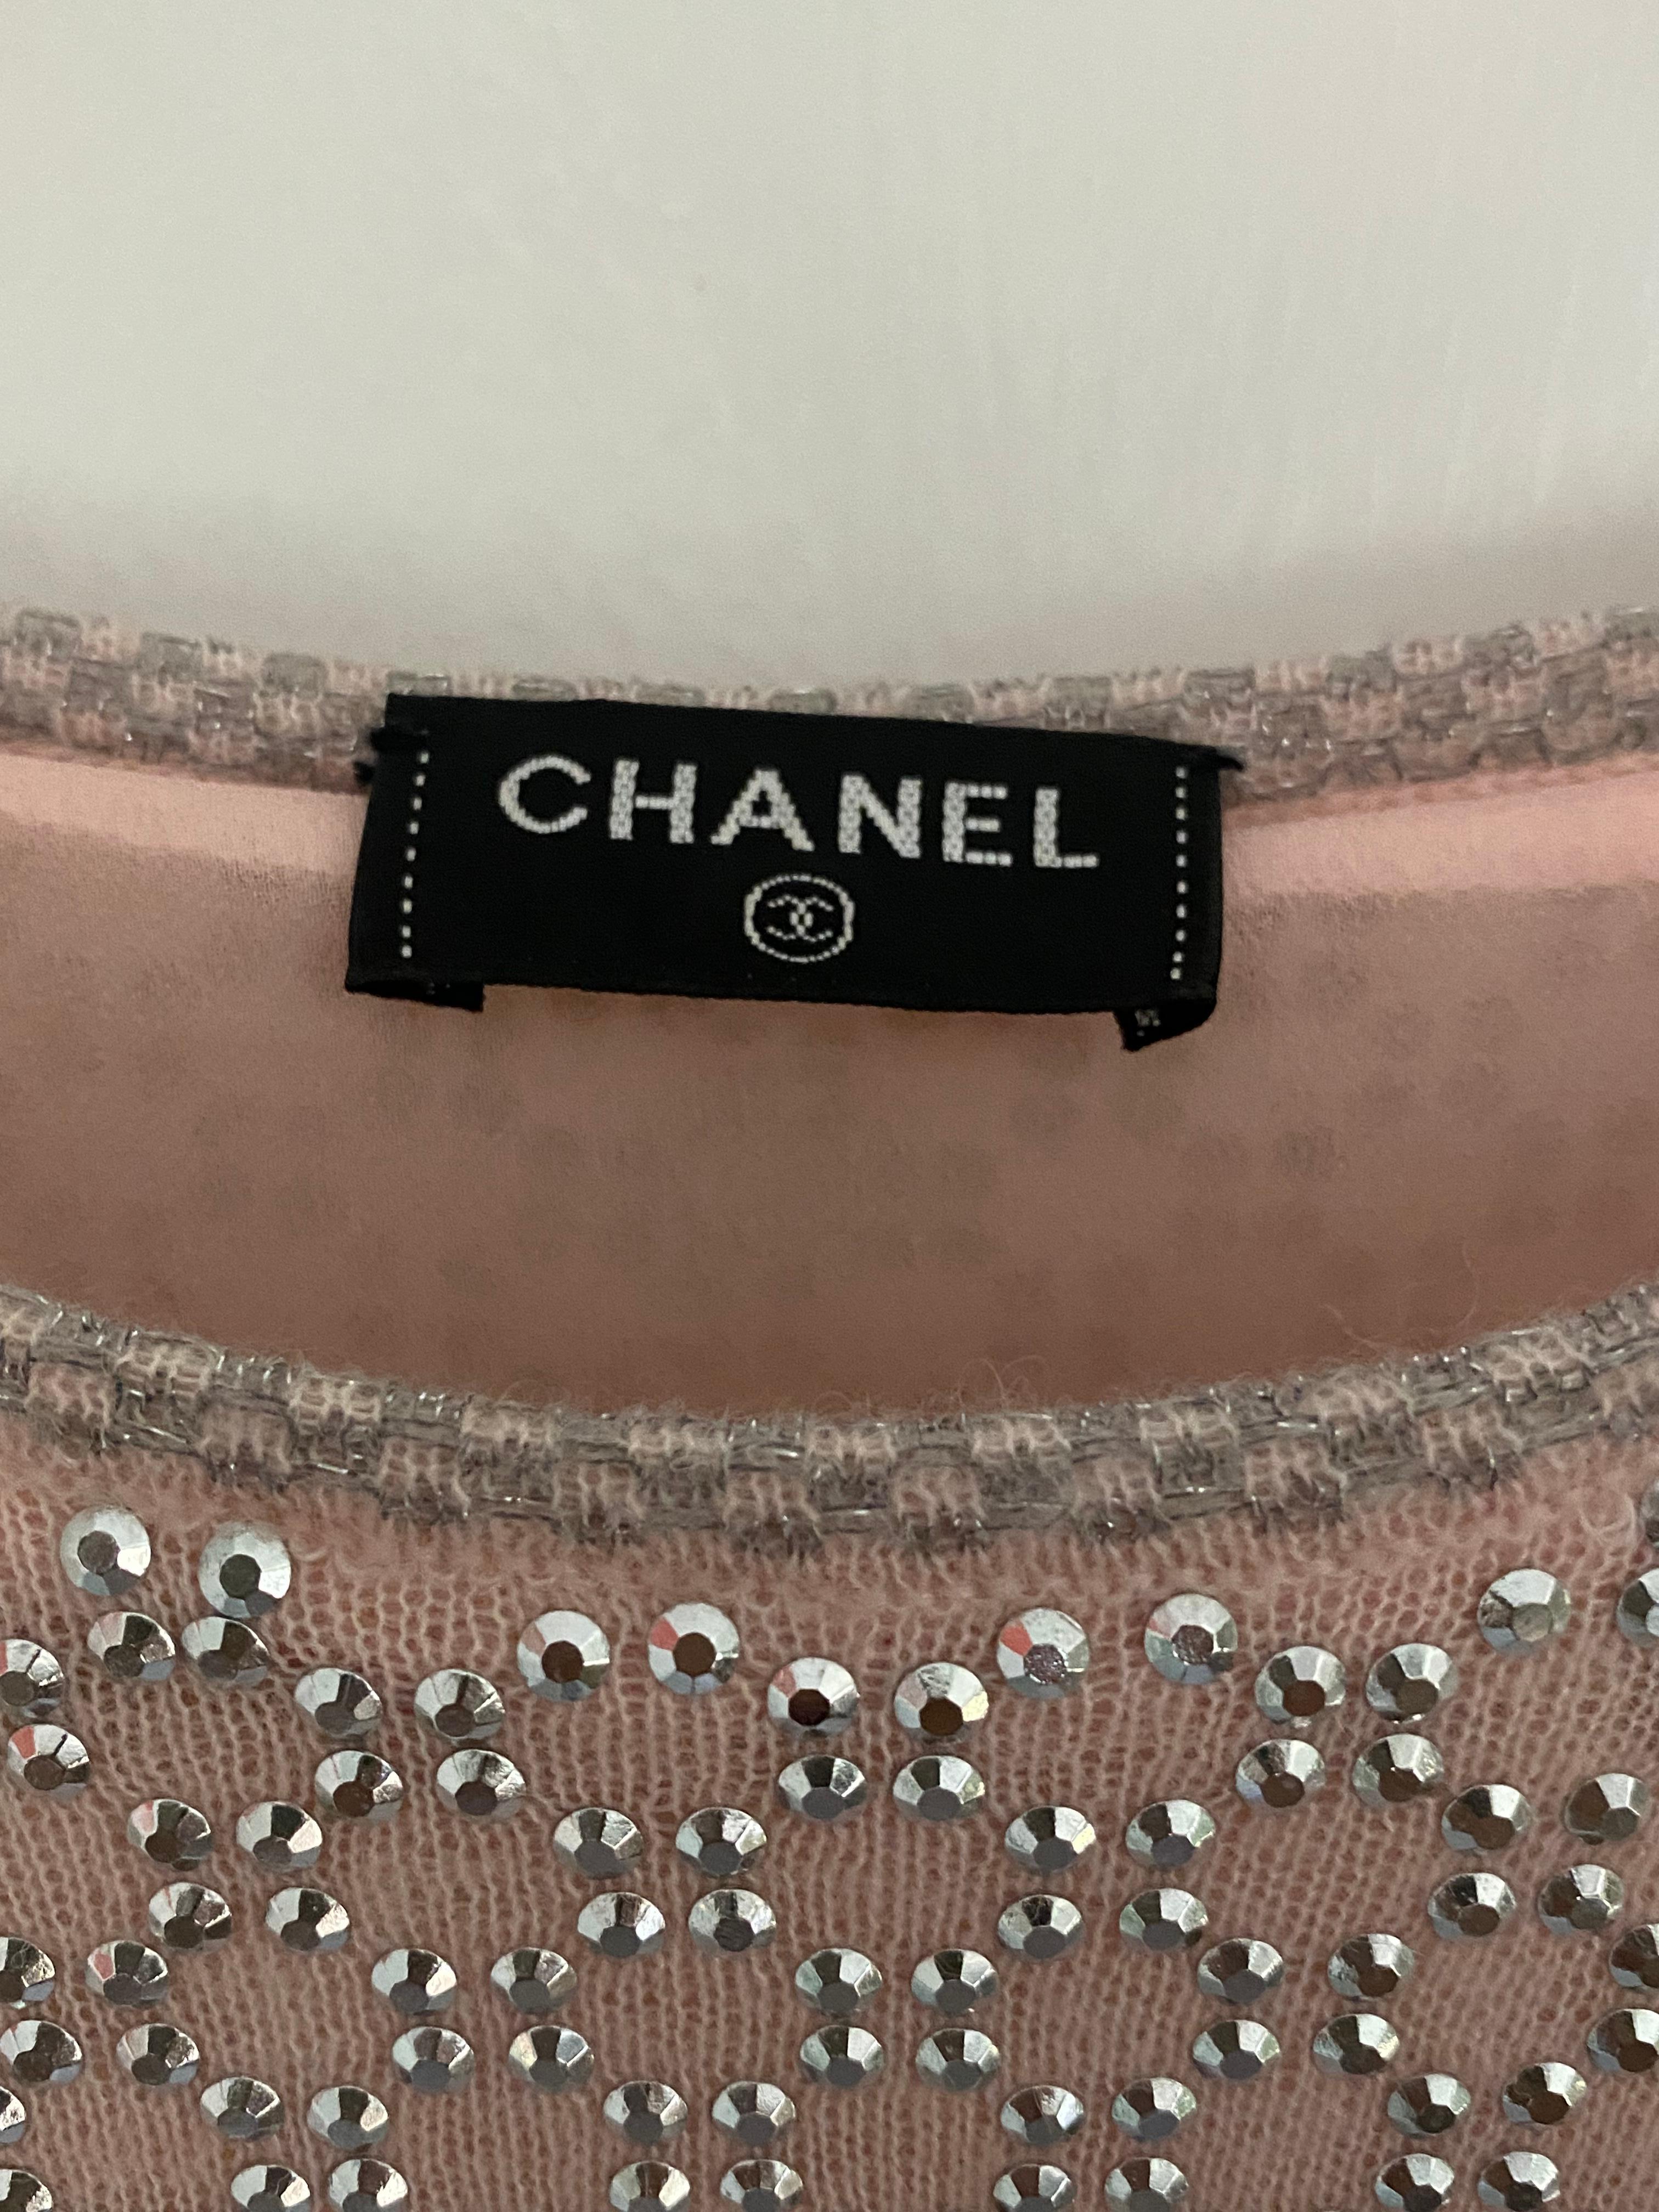 Chanel - Robe embellie cloutée argentée rose pâle, taille 38, état neuf en vente 4